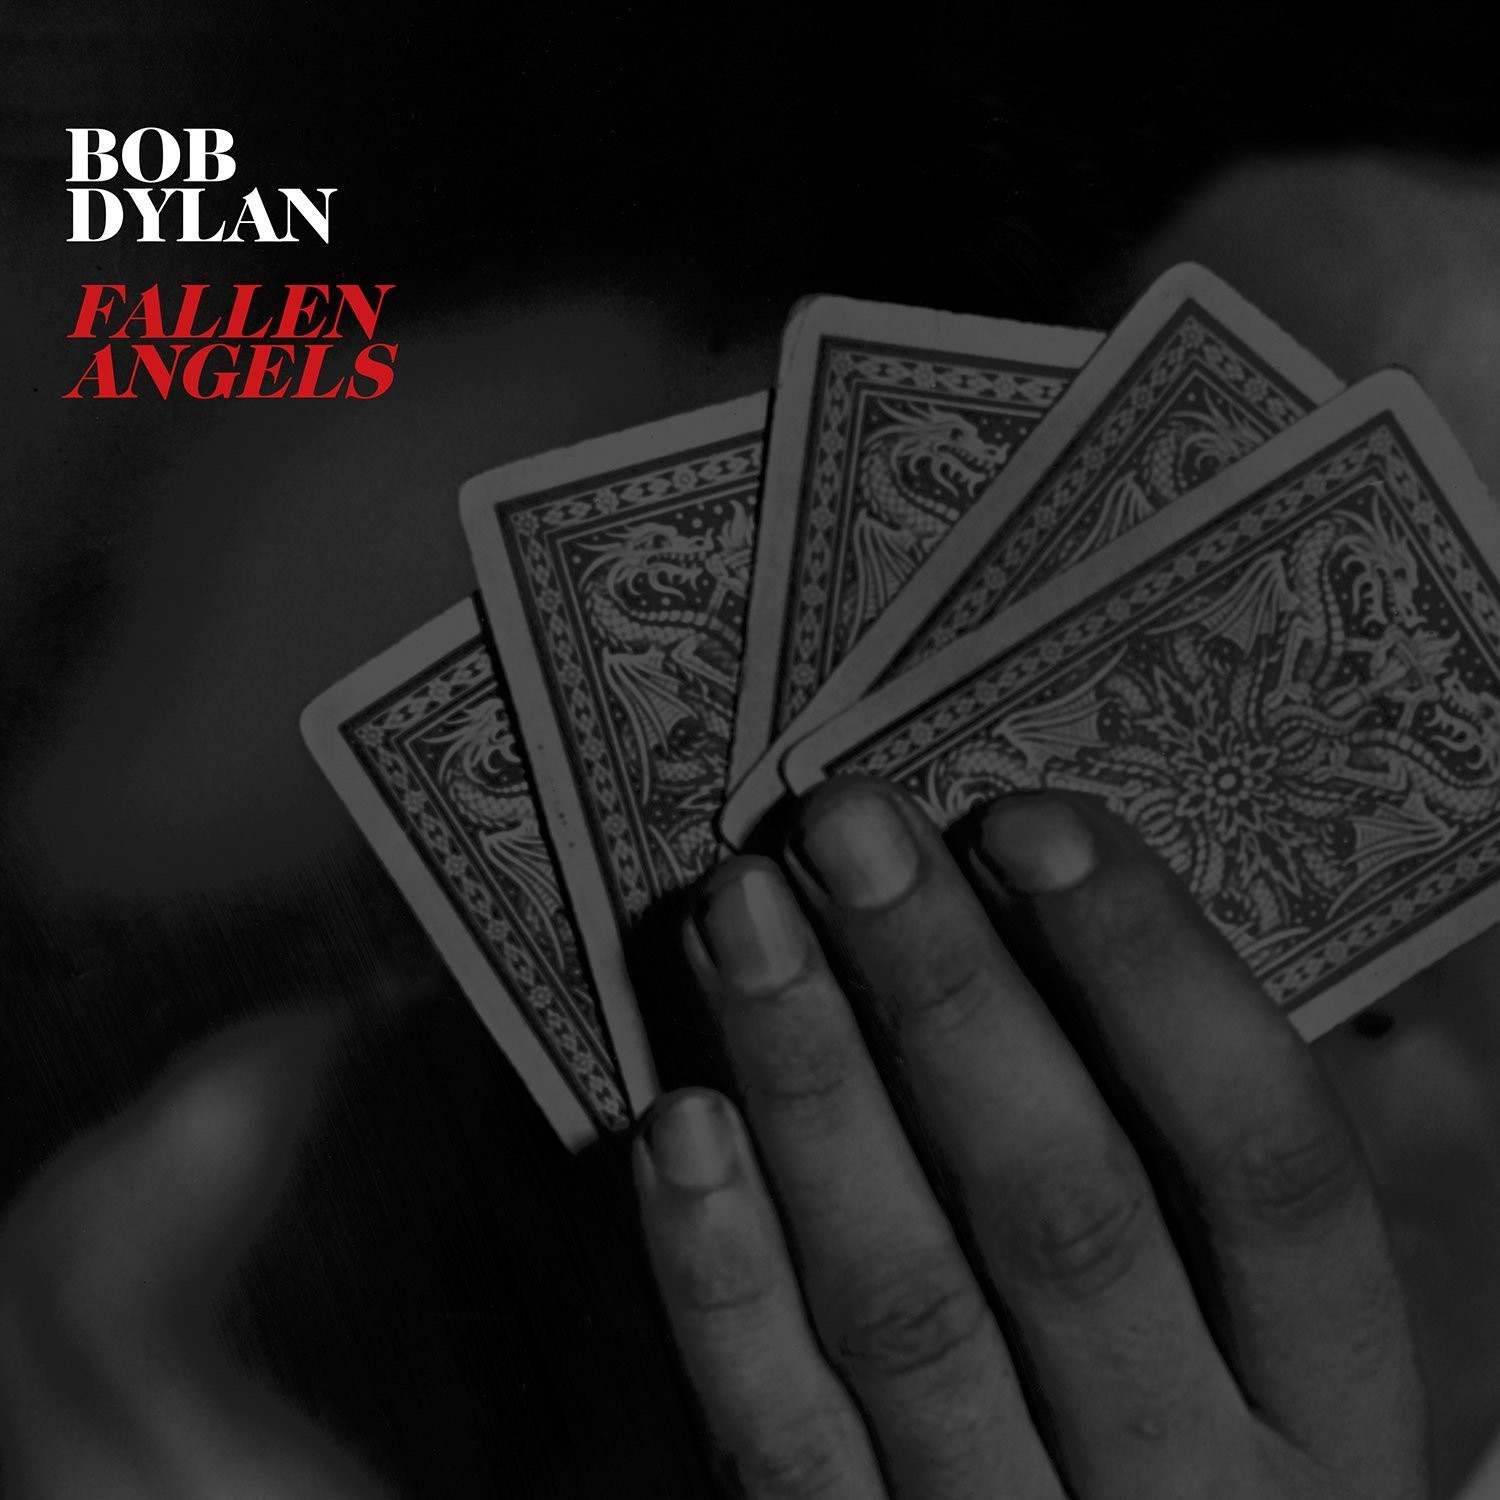 Günün Albümü: Bob Dylan; "Fallen Angels" (2016).